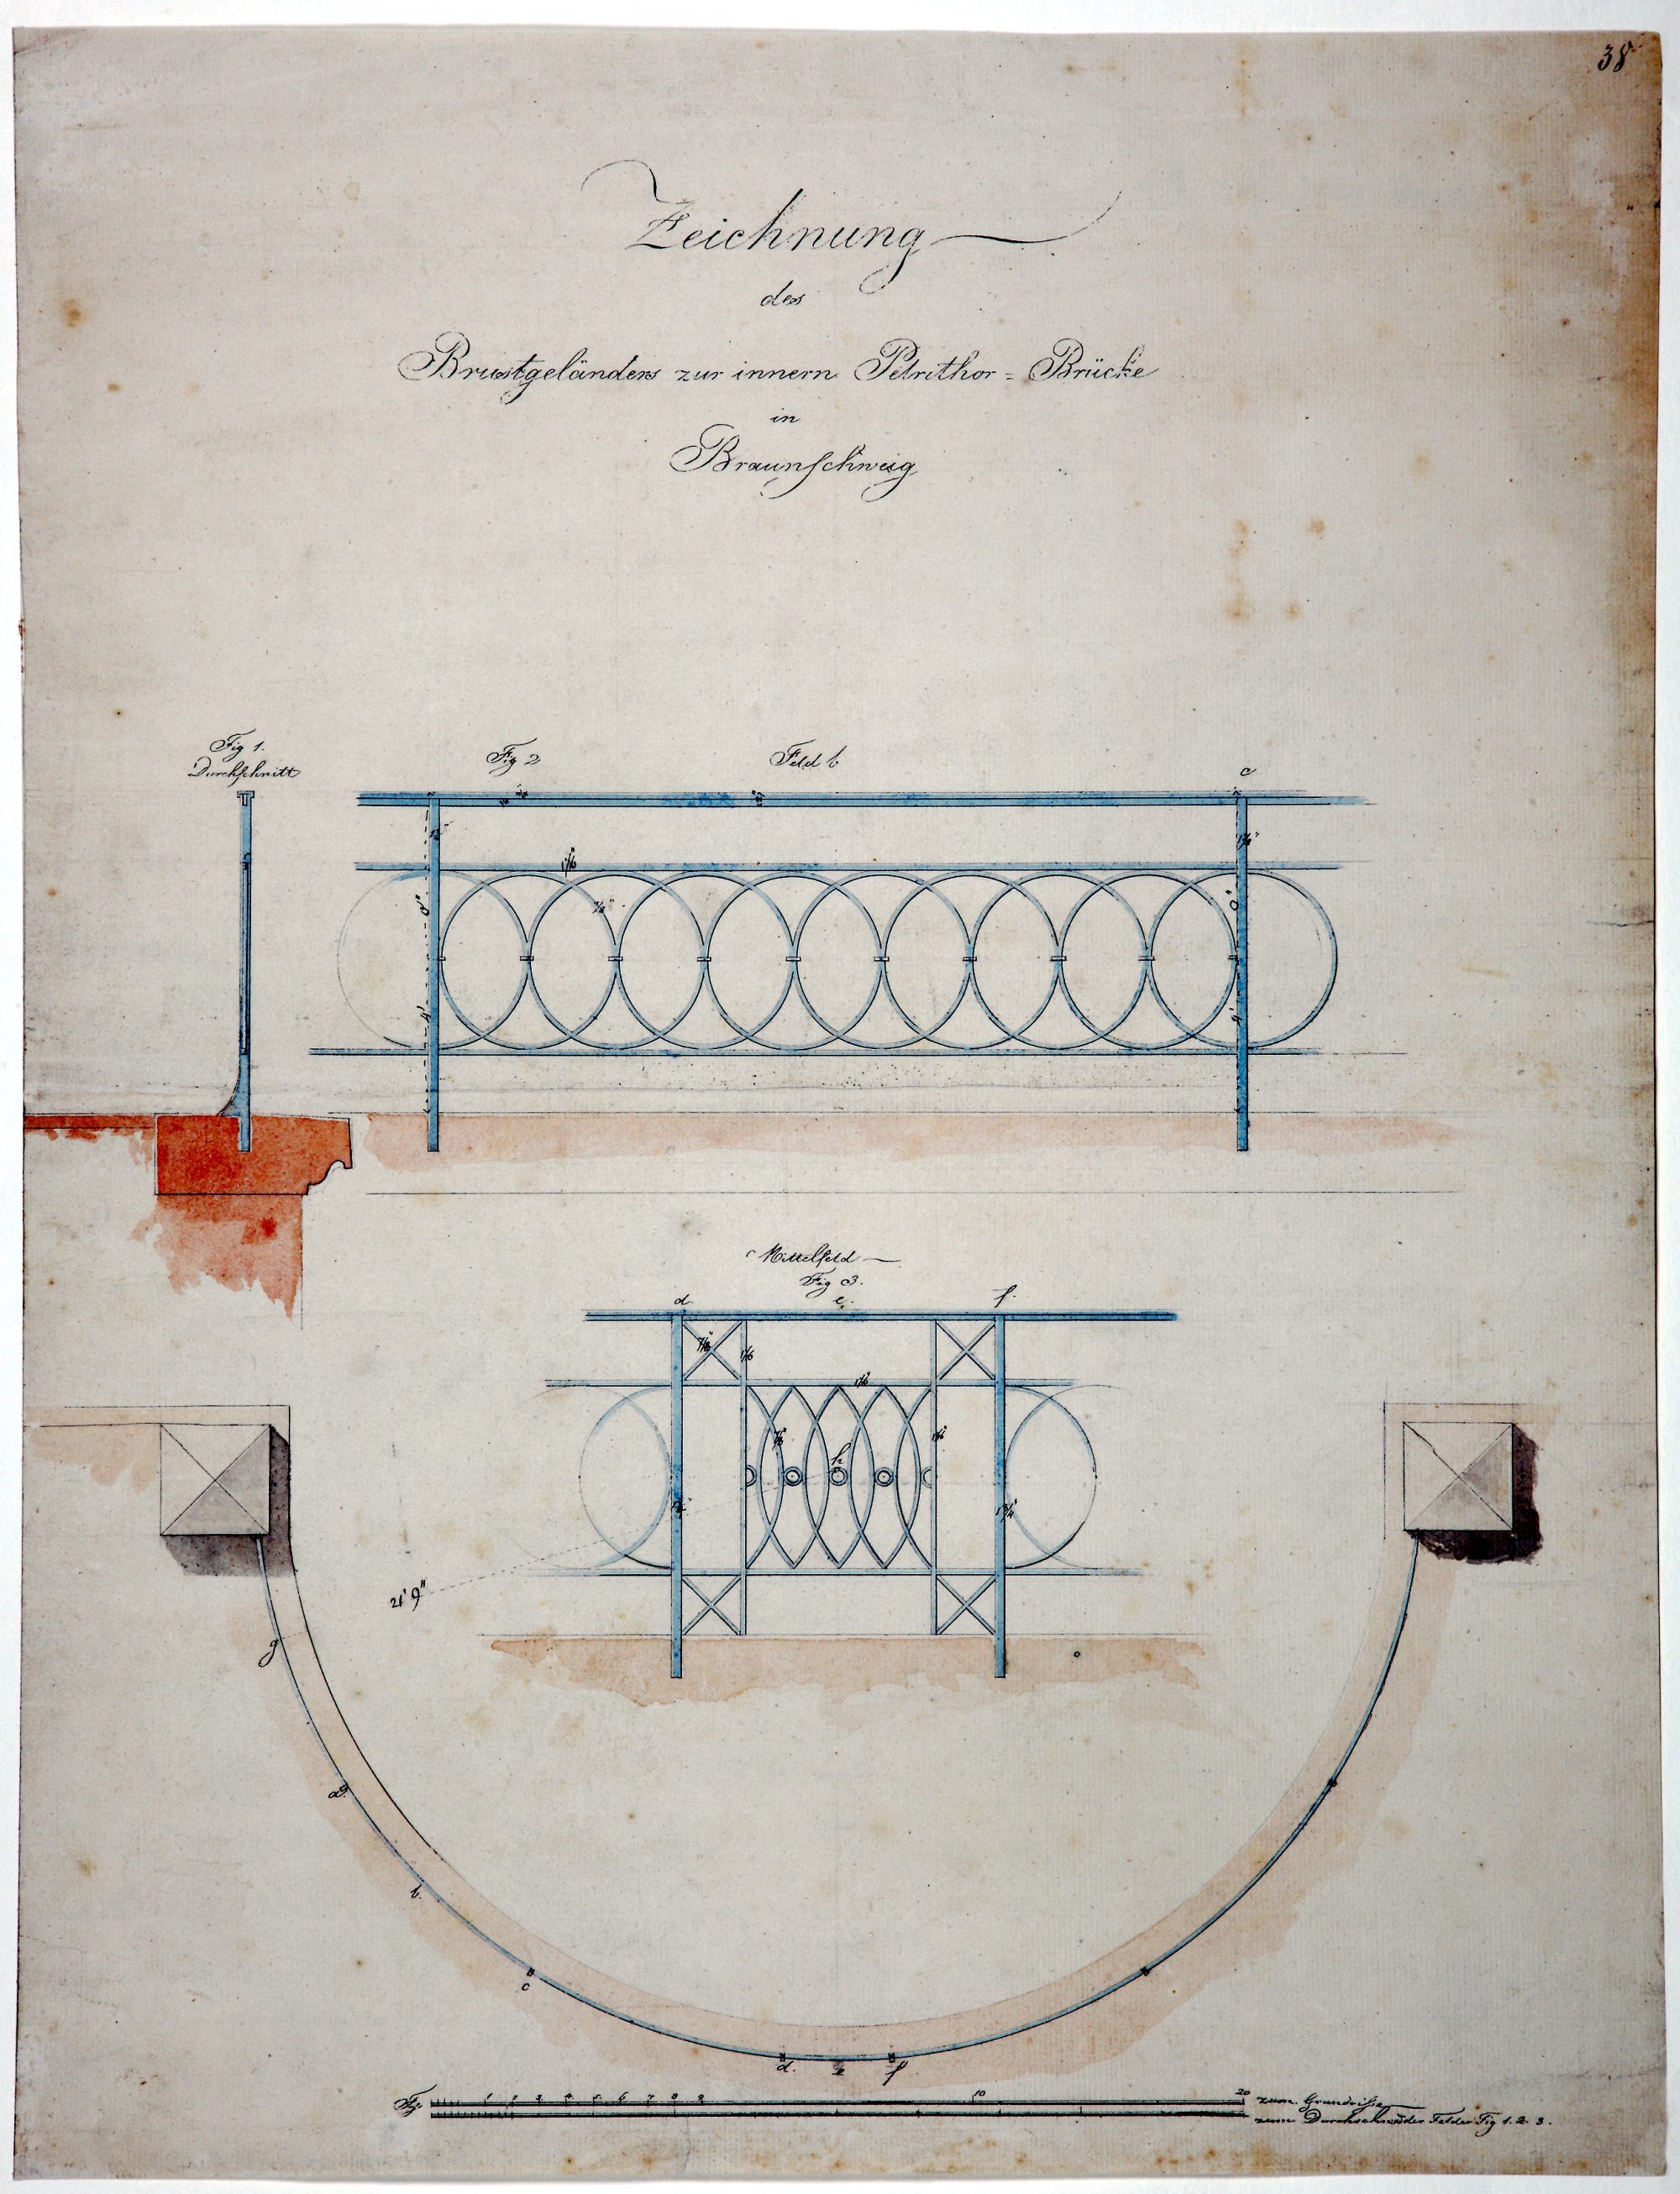 Brücke Neues Petritor, Entwurfszeichnung von Krahe, Geländerdetails, 1819 (Wird bei Klick vergrößert)